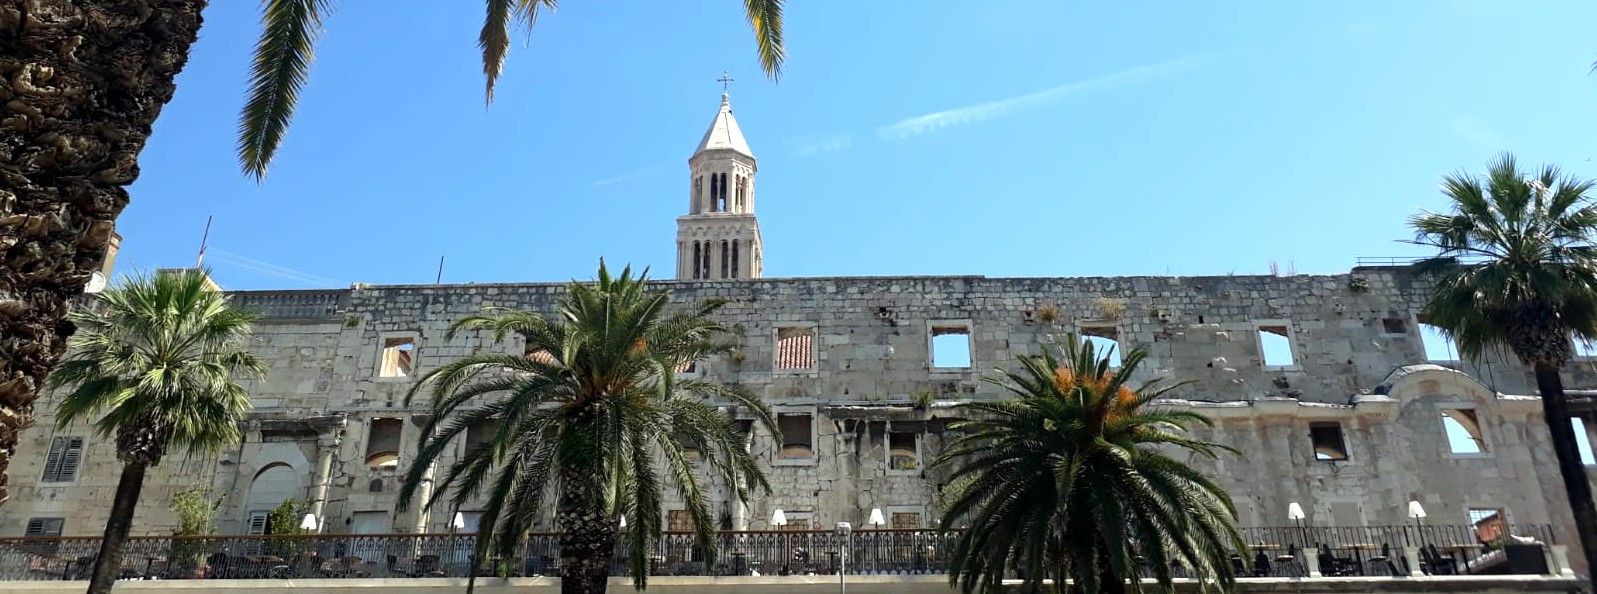 Diocletianus palats är ett antikt romerskt palats i Split i Kroatien